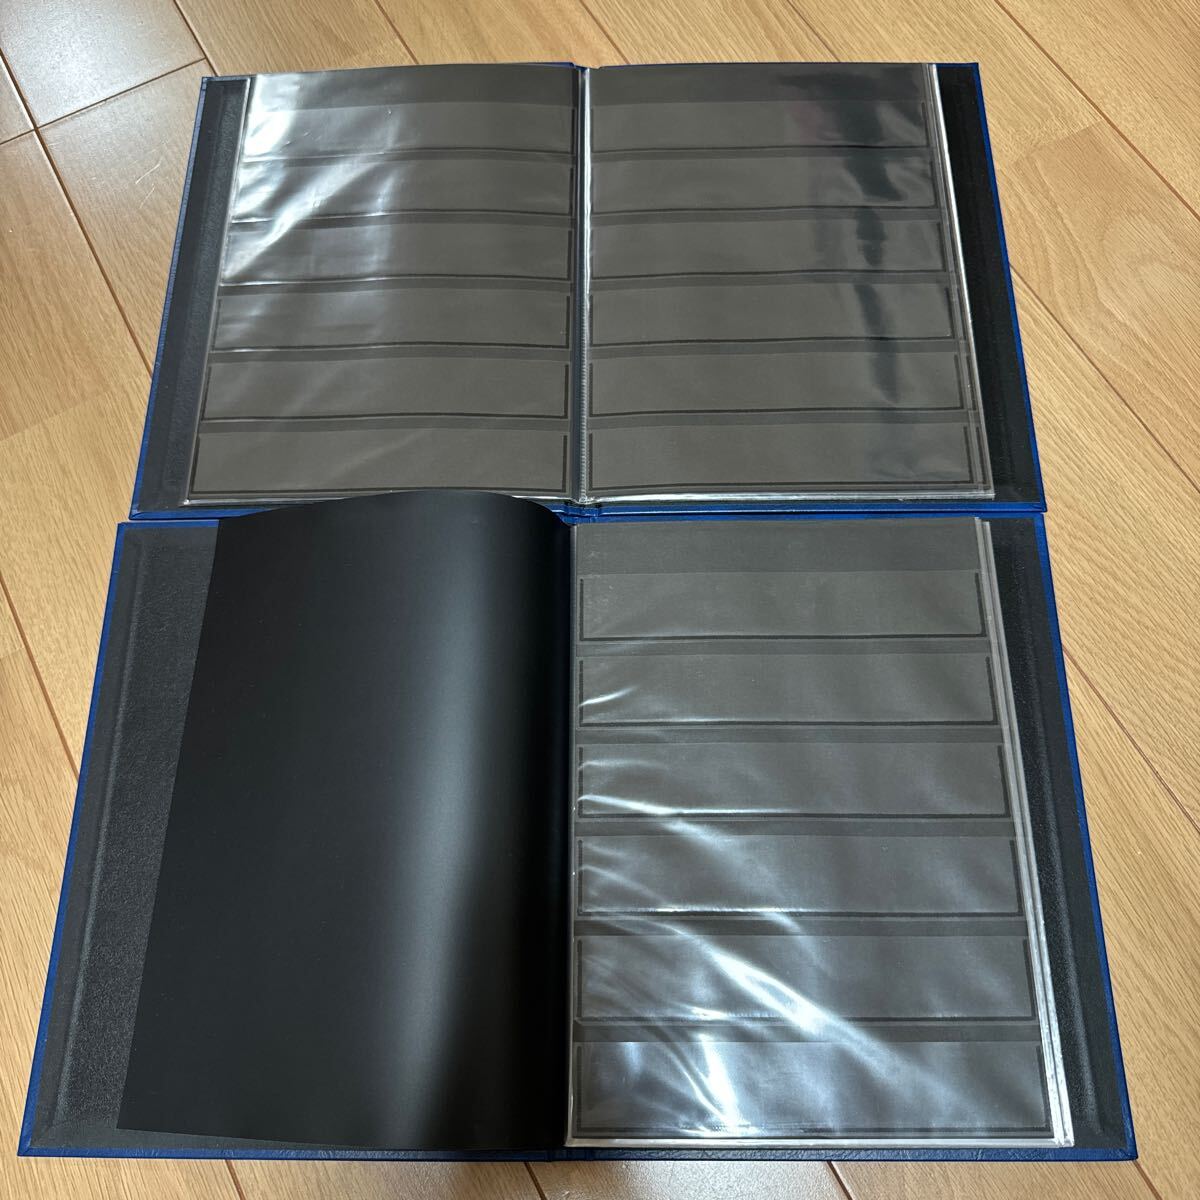  stock книжка Stamp Album BTypete-ji-SB-30N штамп альбом синий 3 шт. суммировать с футляром длина примерный 27cm ширина примерный 20.3cm картон 8 листов 16 страница 6 уровень 